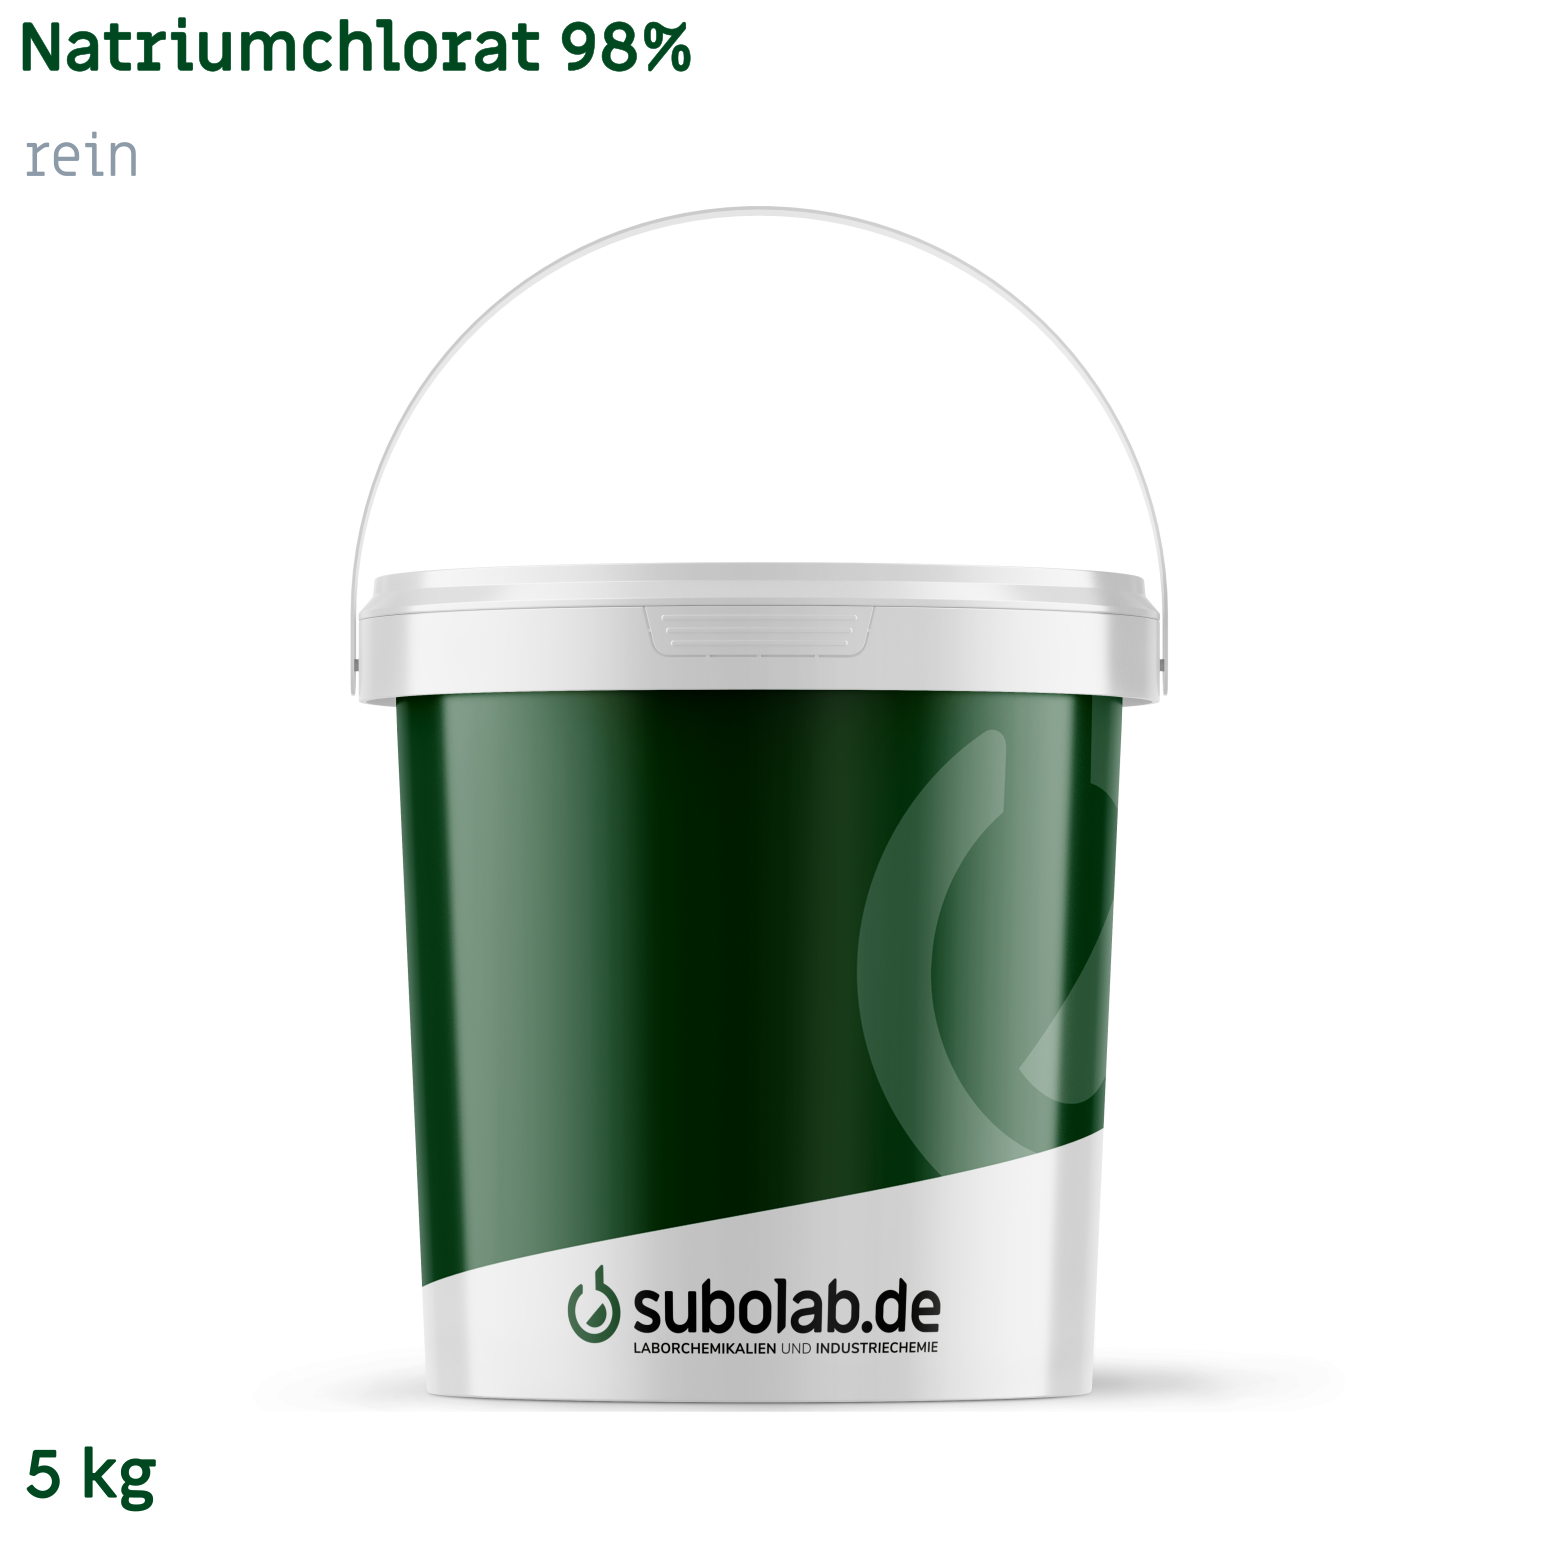 Bild von Natriumchlorat 98% rein (5 kg)